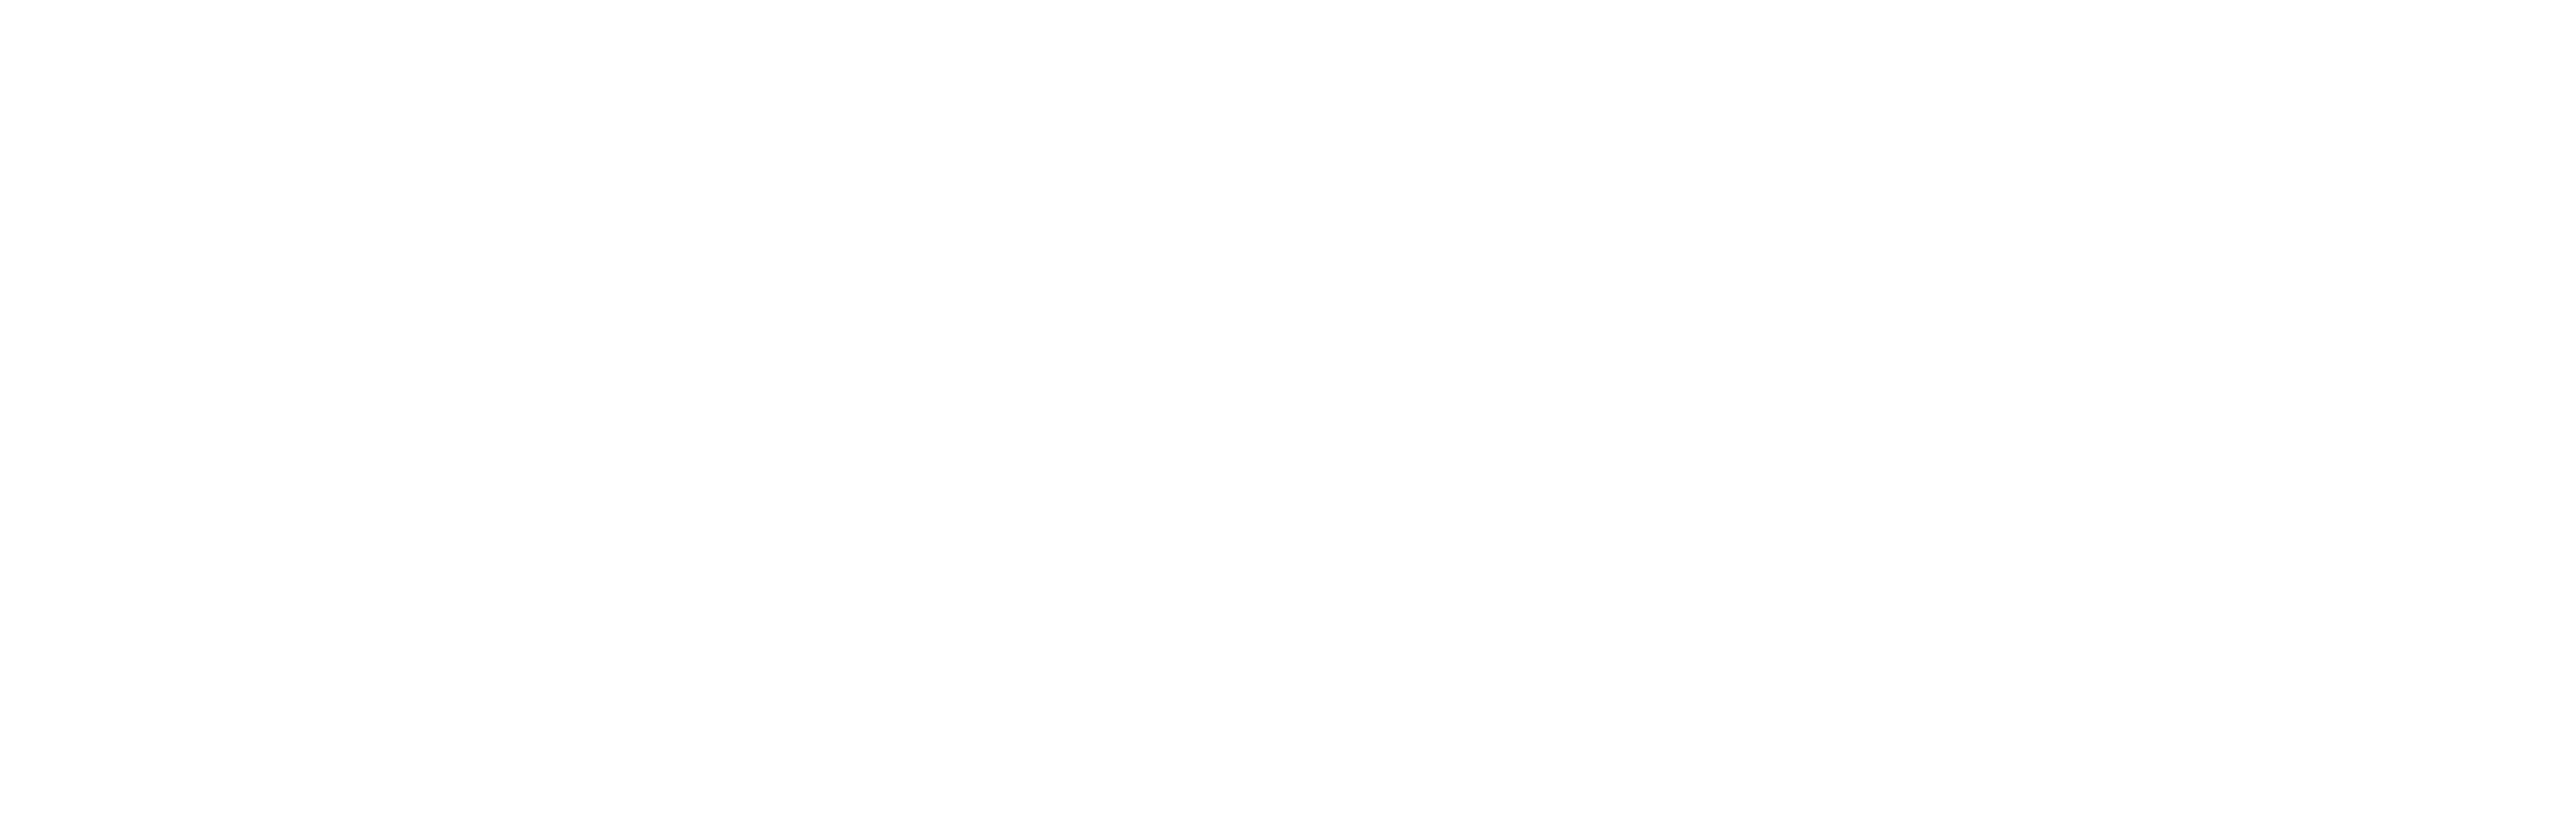 Rotaract Masterbrand - White